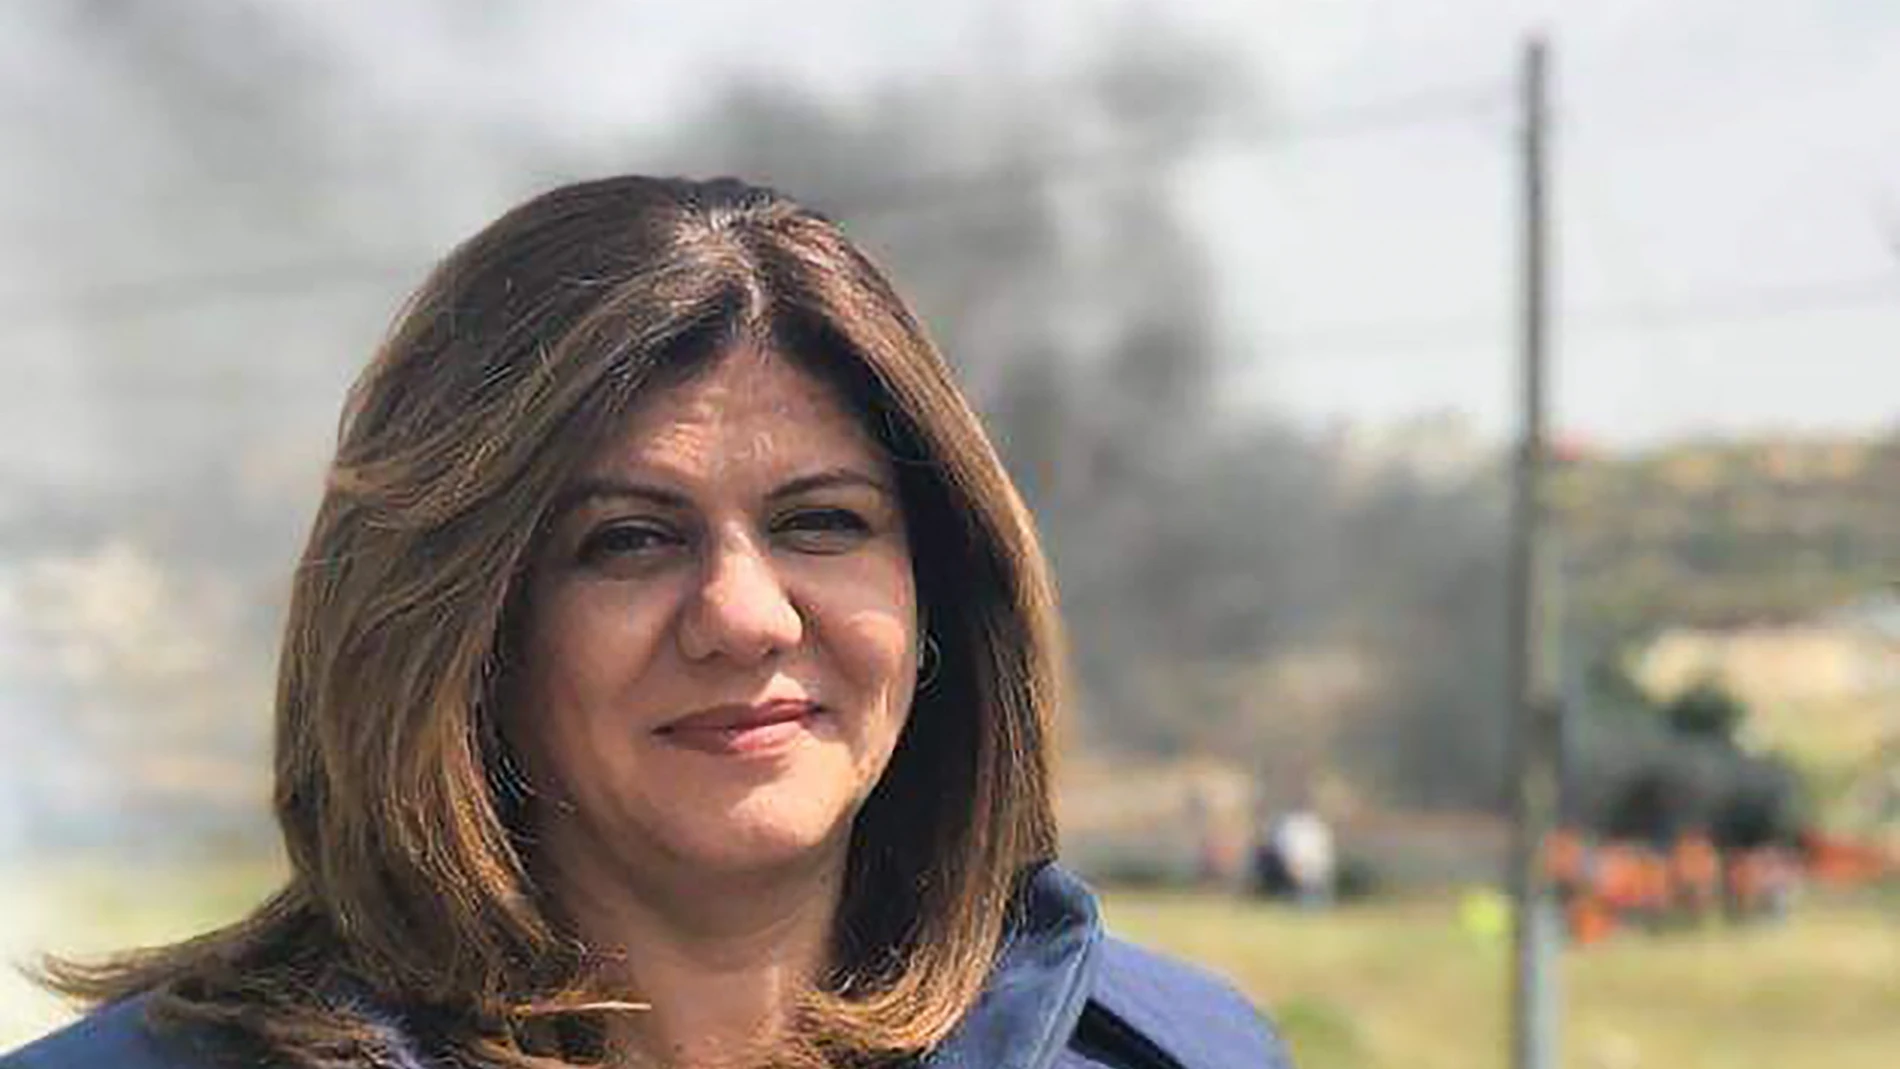 El asesinato de la periodista de Al Jazeera Shirin Abu Aqla mientras cubría una incursión en Cirjordania conmocionó a la comunidad internacional.